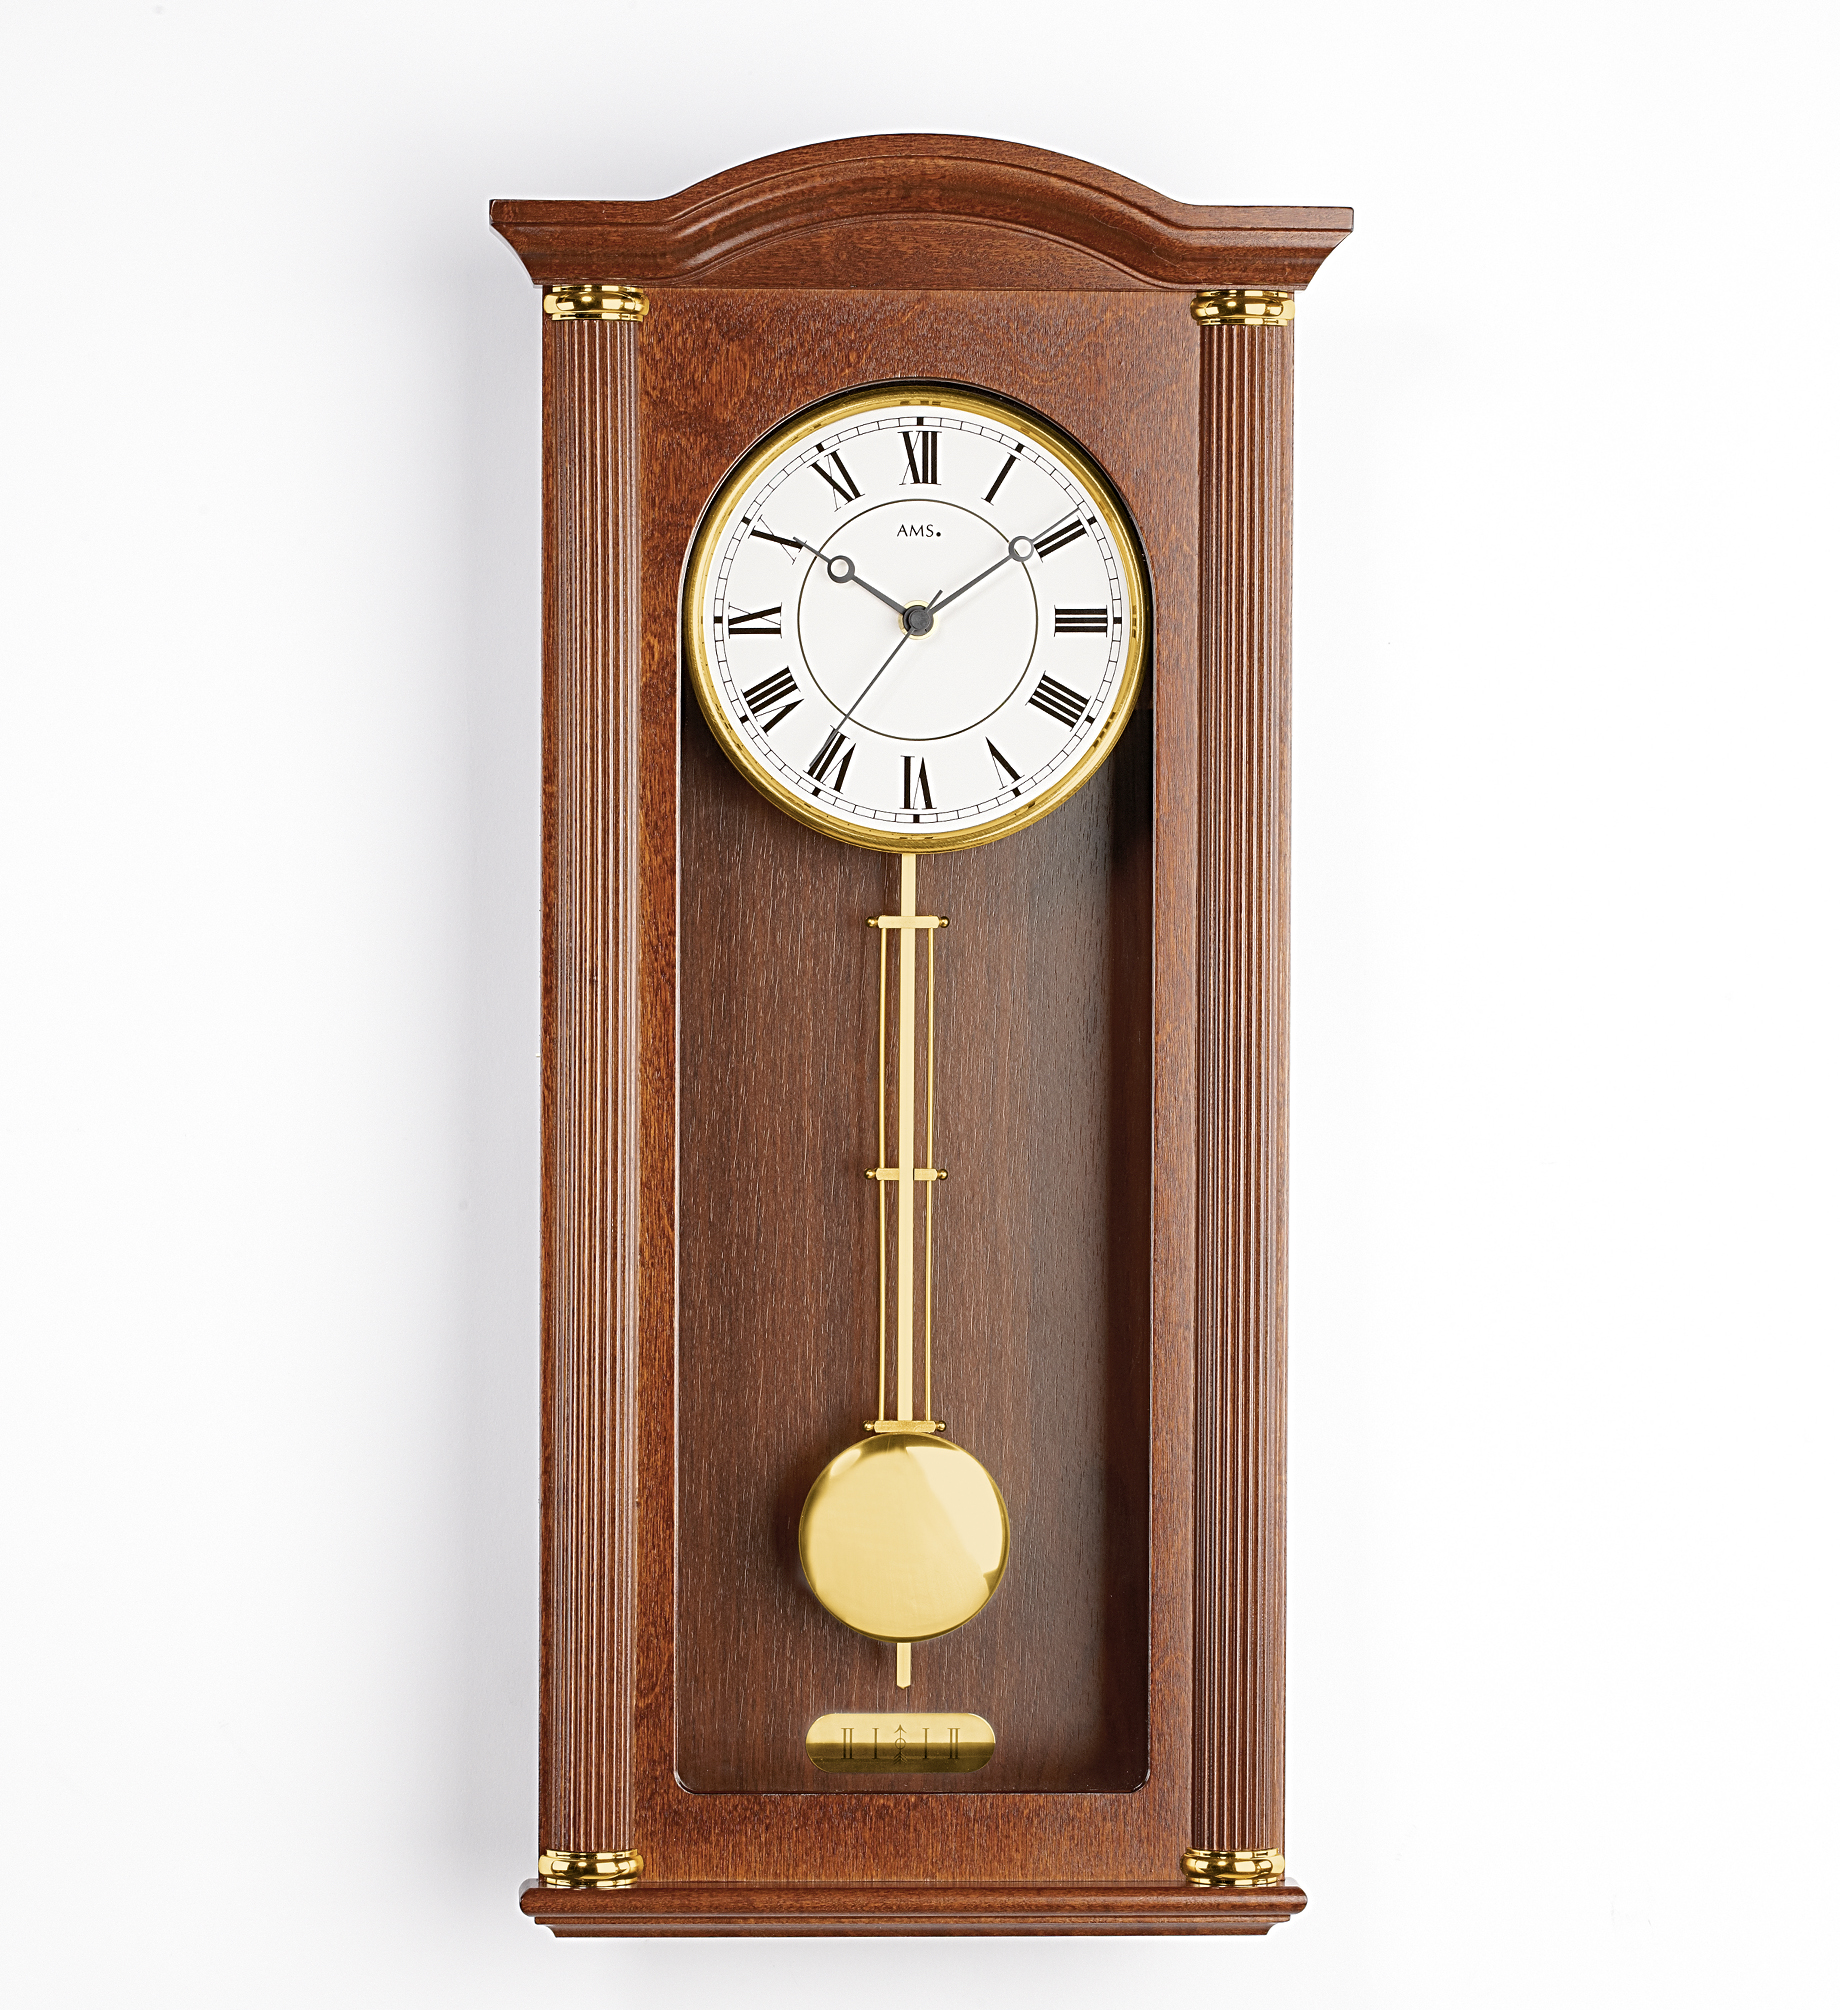 The pendulum clock 